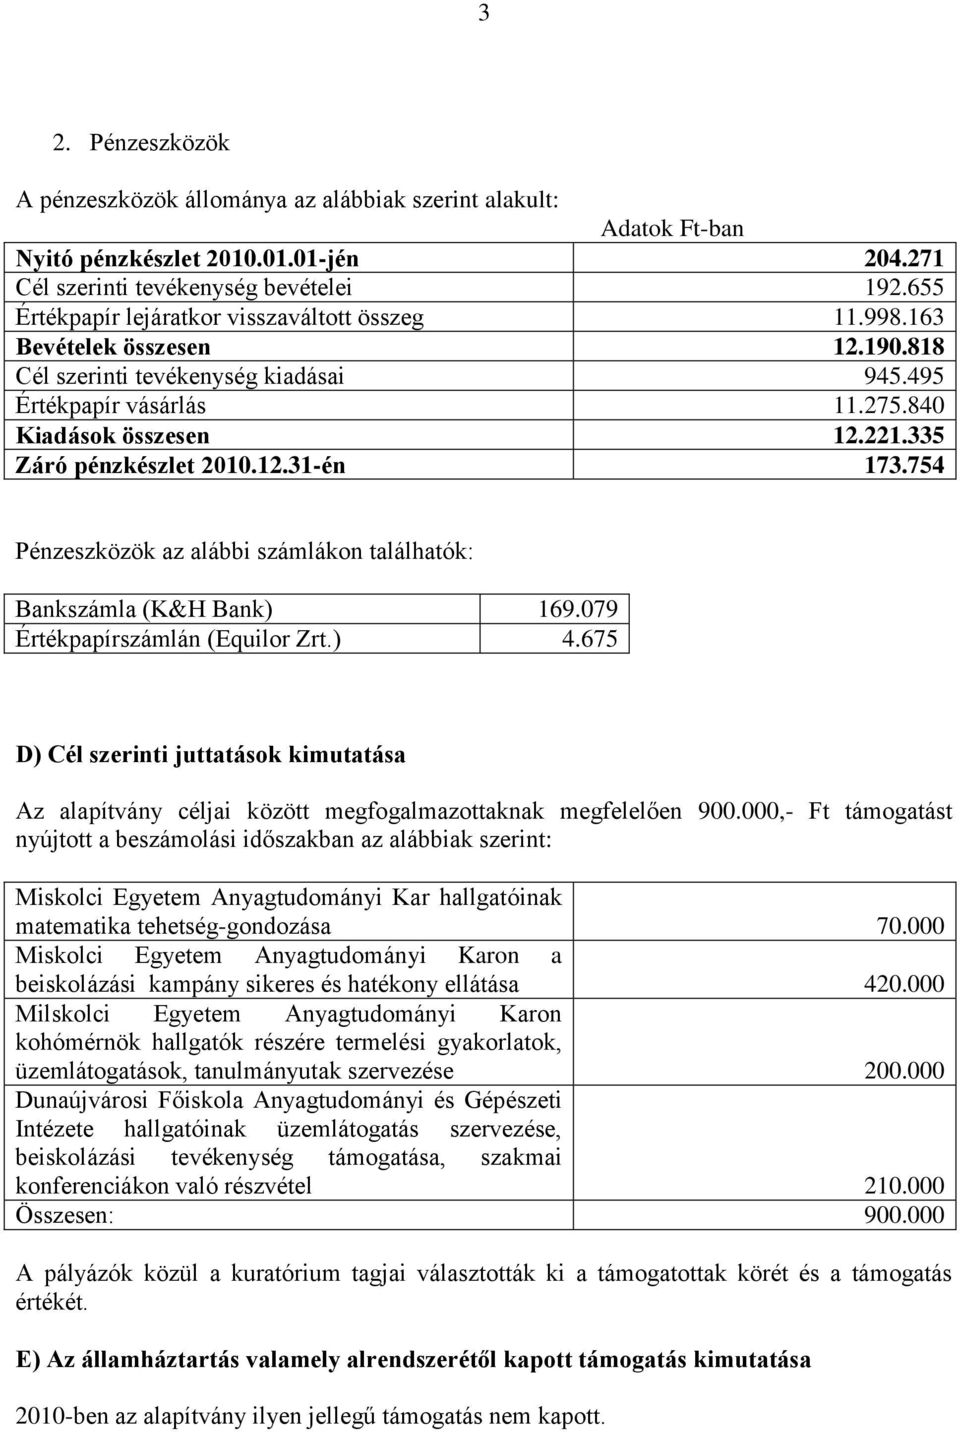 335 Záró pénzkészlet 2010.12.31-én 173.754 Pénzeszközök az alábbi számlákon találhatók: Bankszámla (K&H Bank) 169.079 Értékpapírszámlán (Equilor Zrt.) 4.